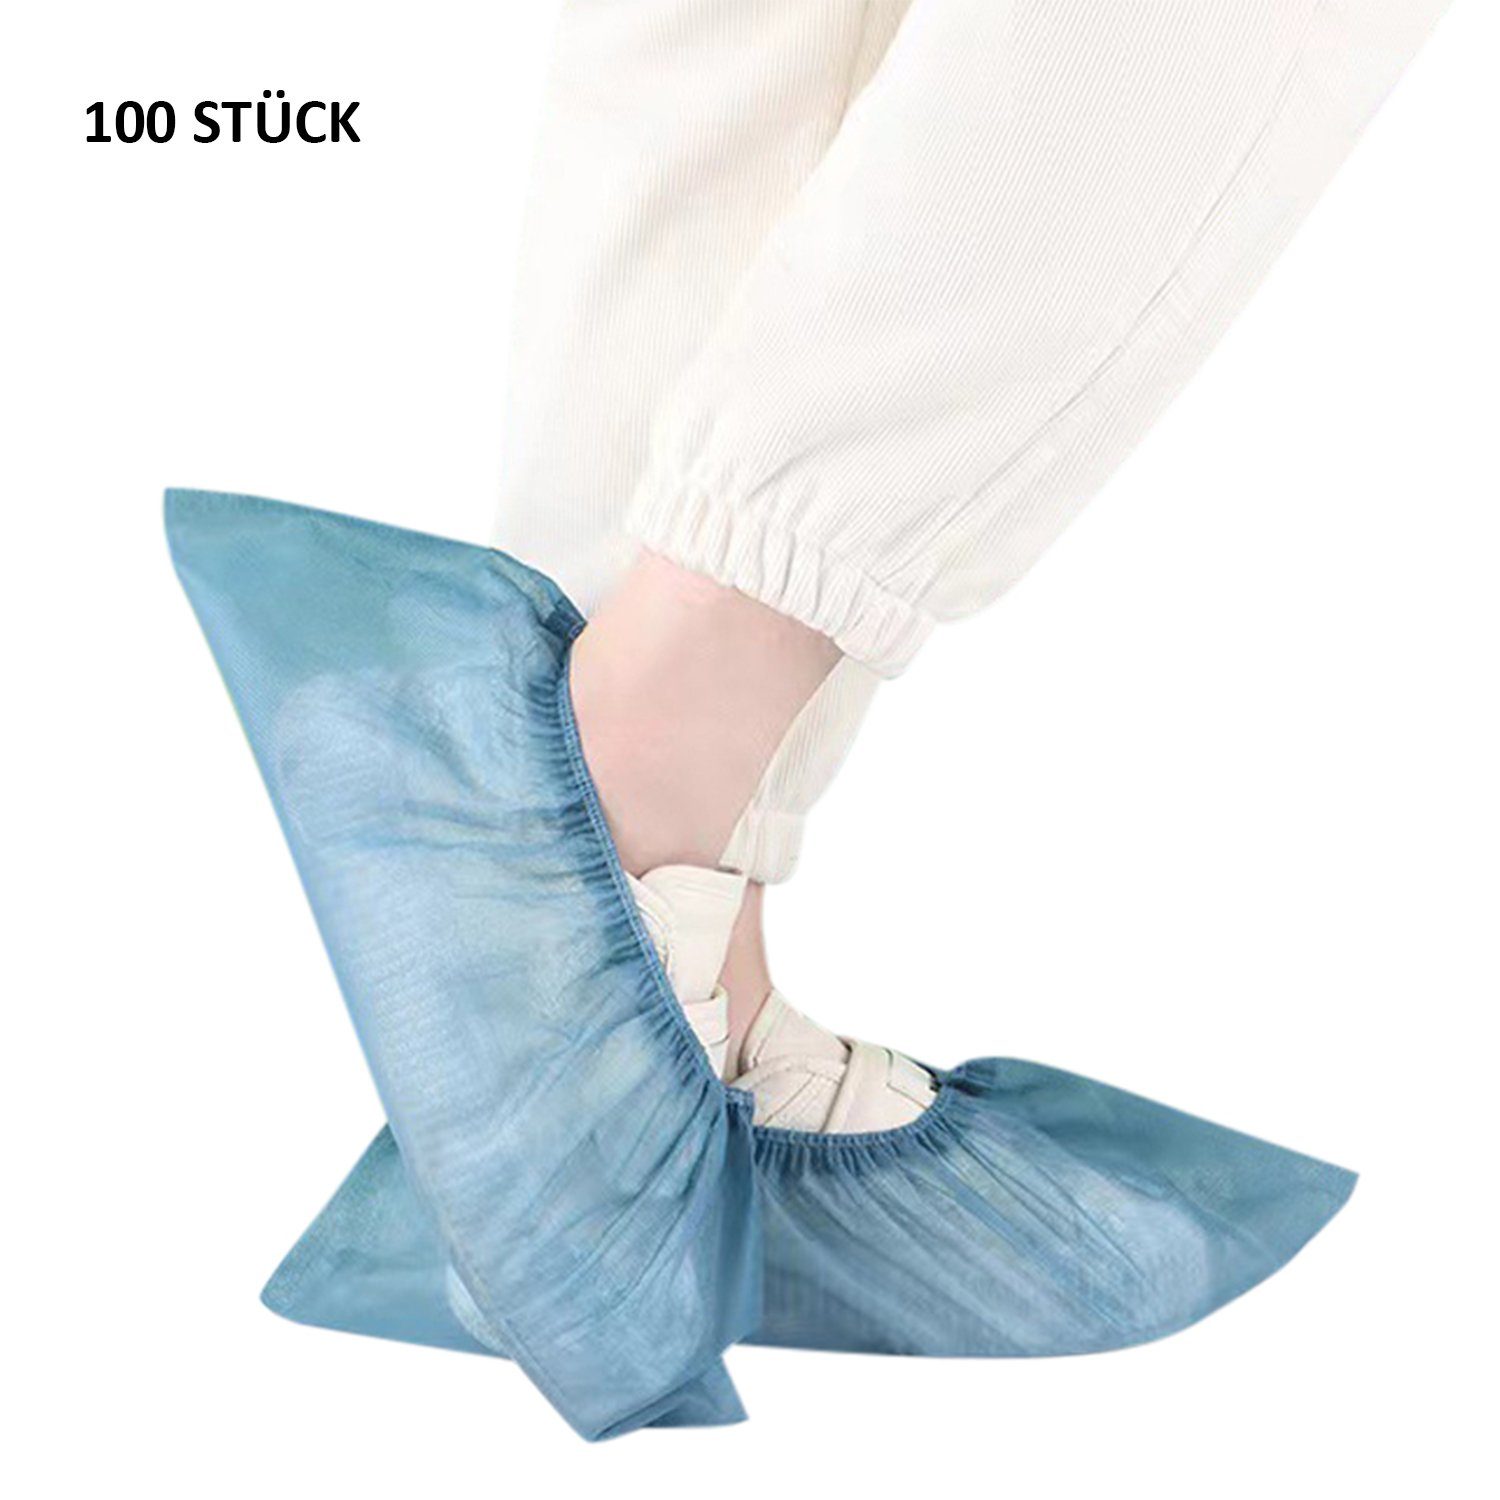 Daisred Schuhüberzieher 100 Stück Schuhüberzieher Blau rutschfest hygienische Einweg-Stiefel